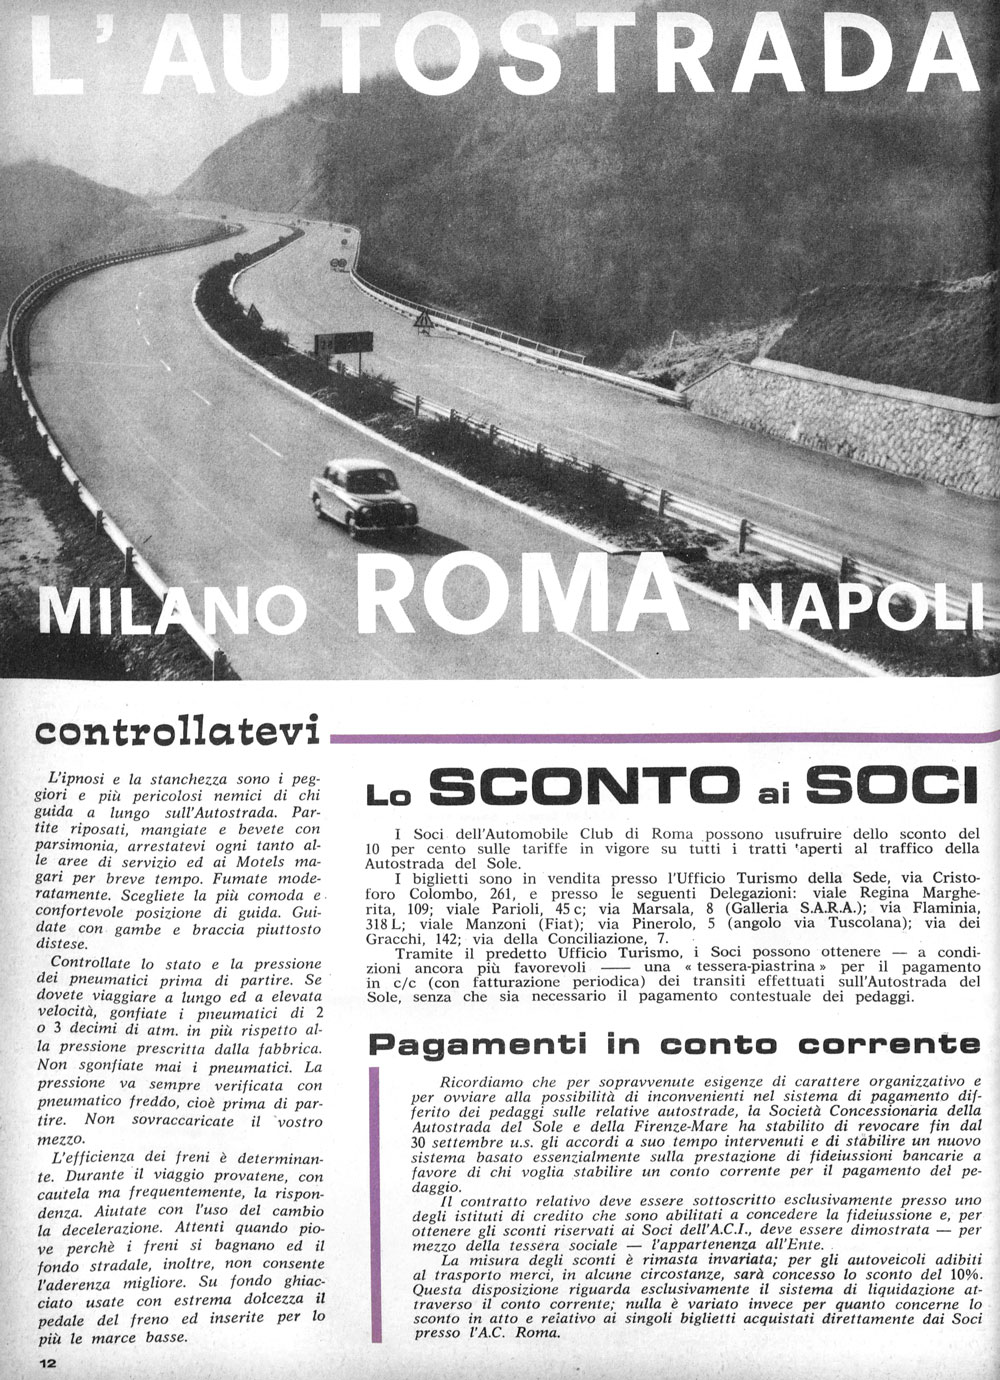 Articolo sull’Autostrada del Sole pubblicato sulla rivista “Automobilismo romano” nel 1964 (fonte: ACI)
